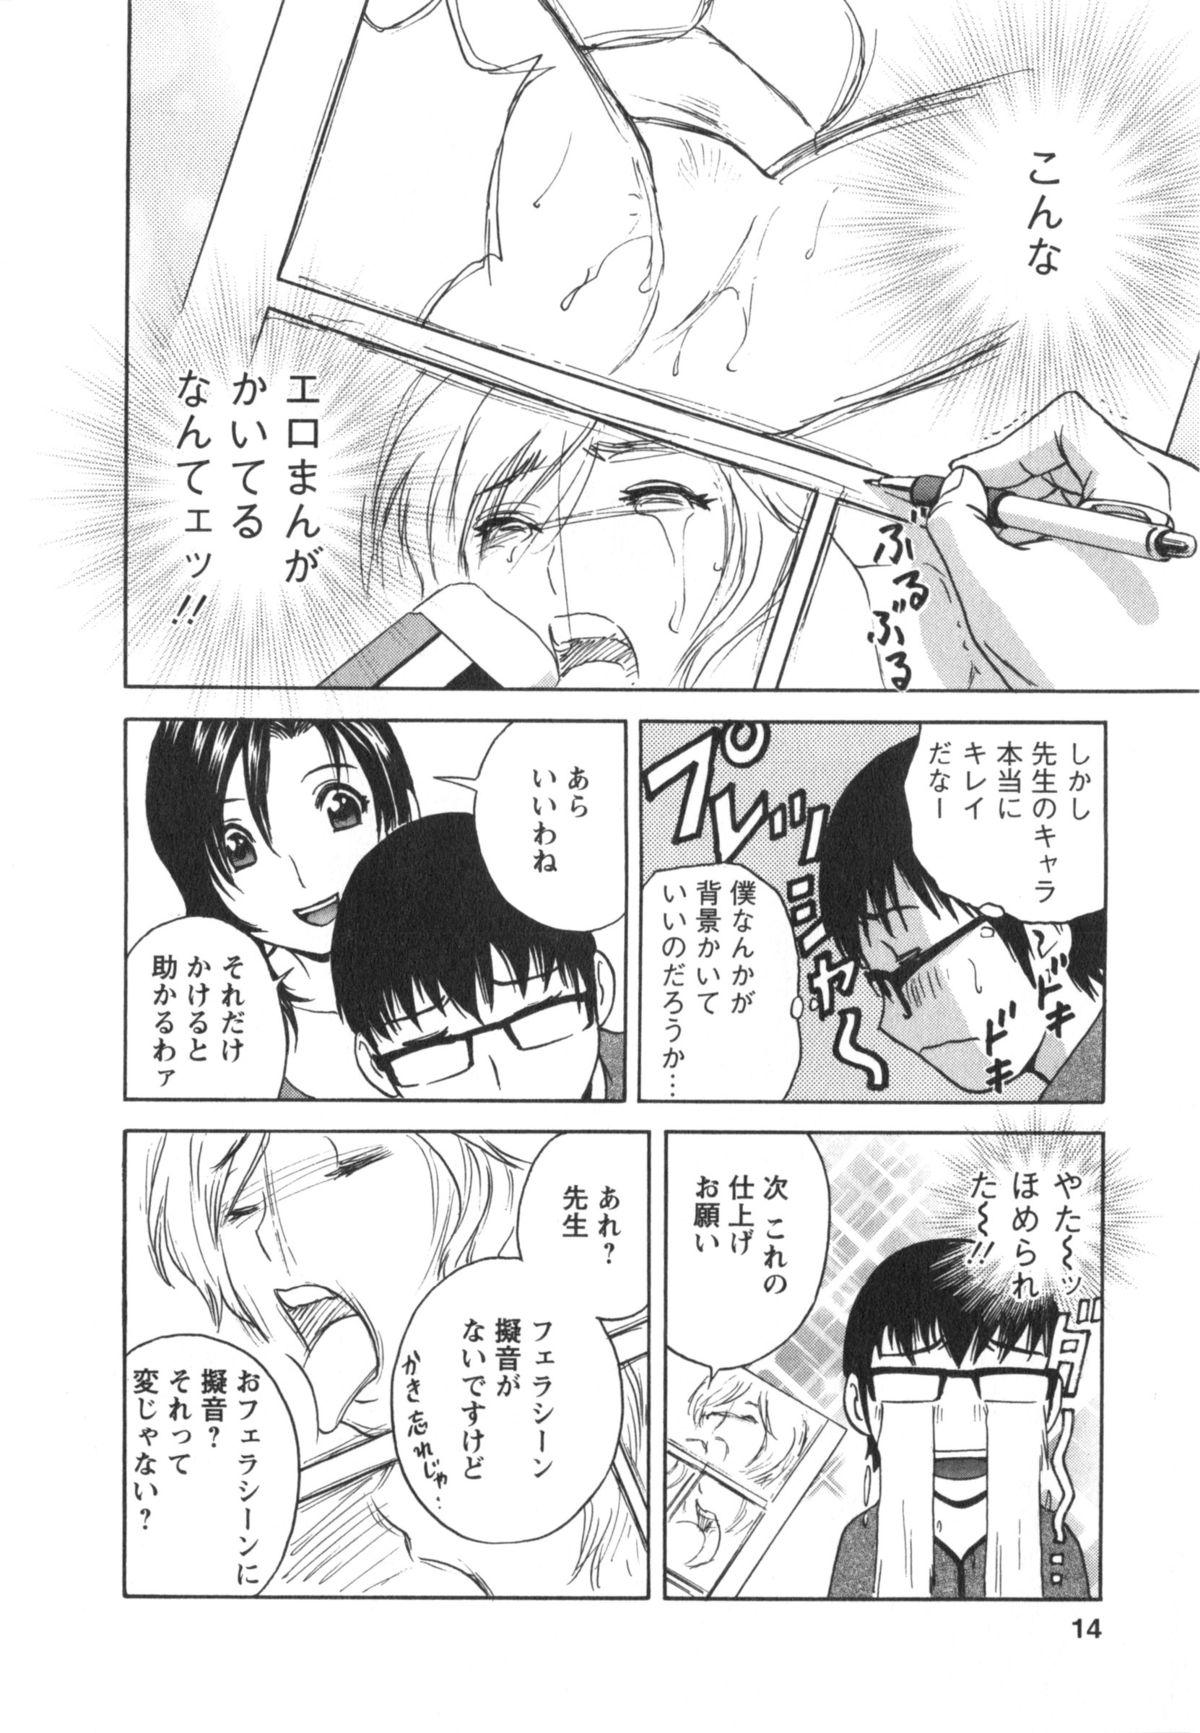 Manga no youna Hitozuma to no Hibi - Days with Married Women such as Comics. 14